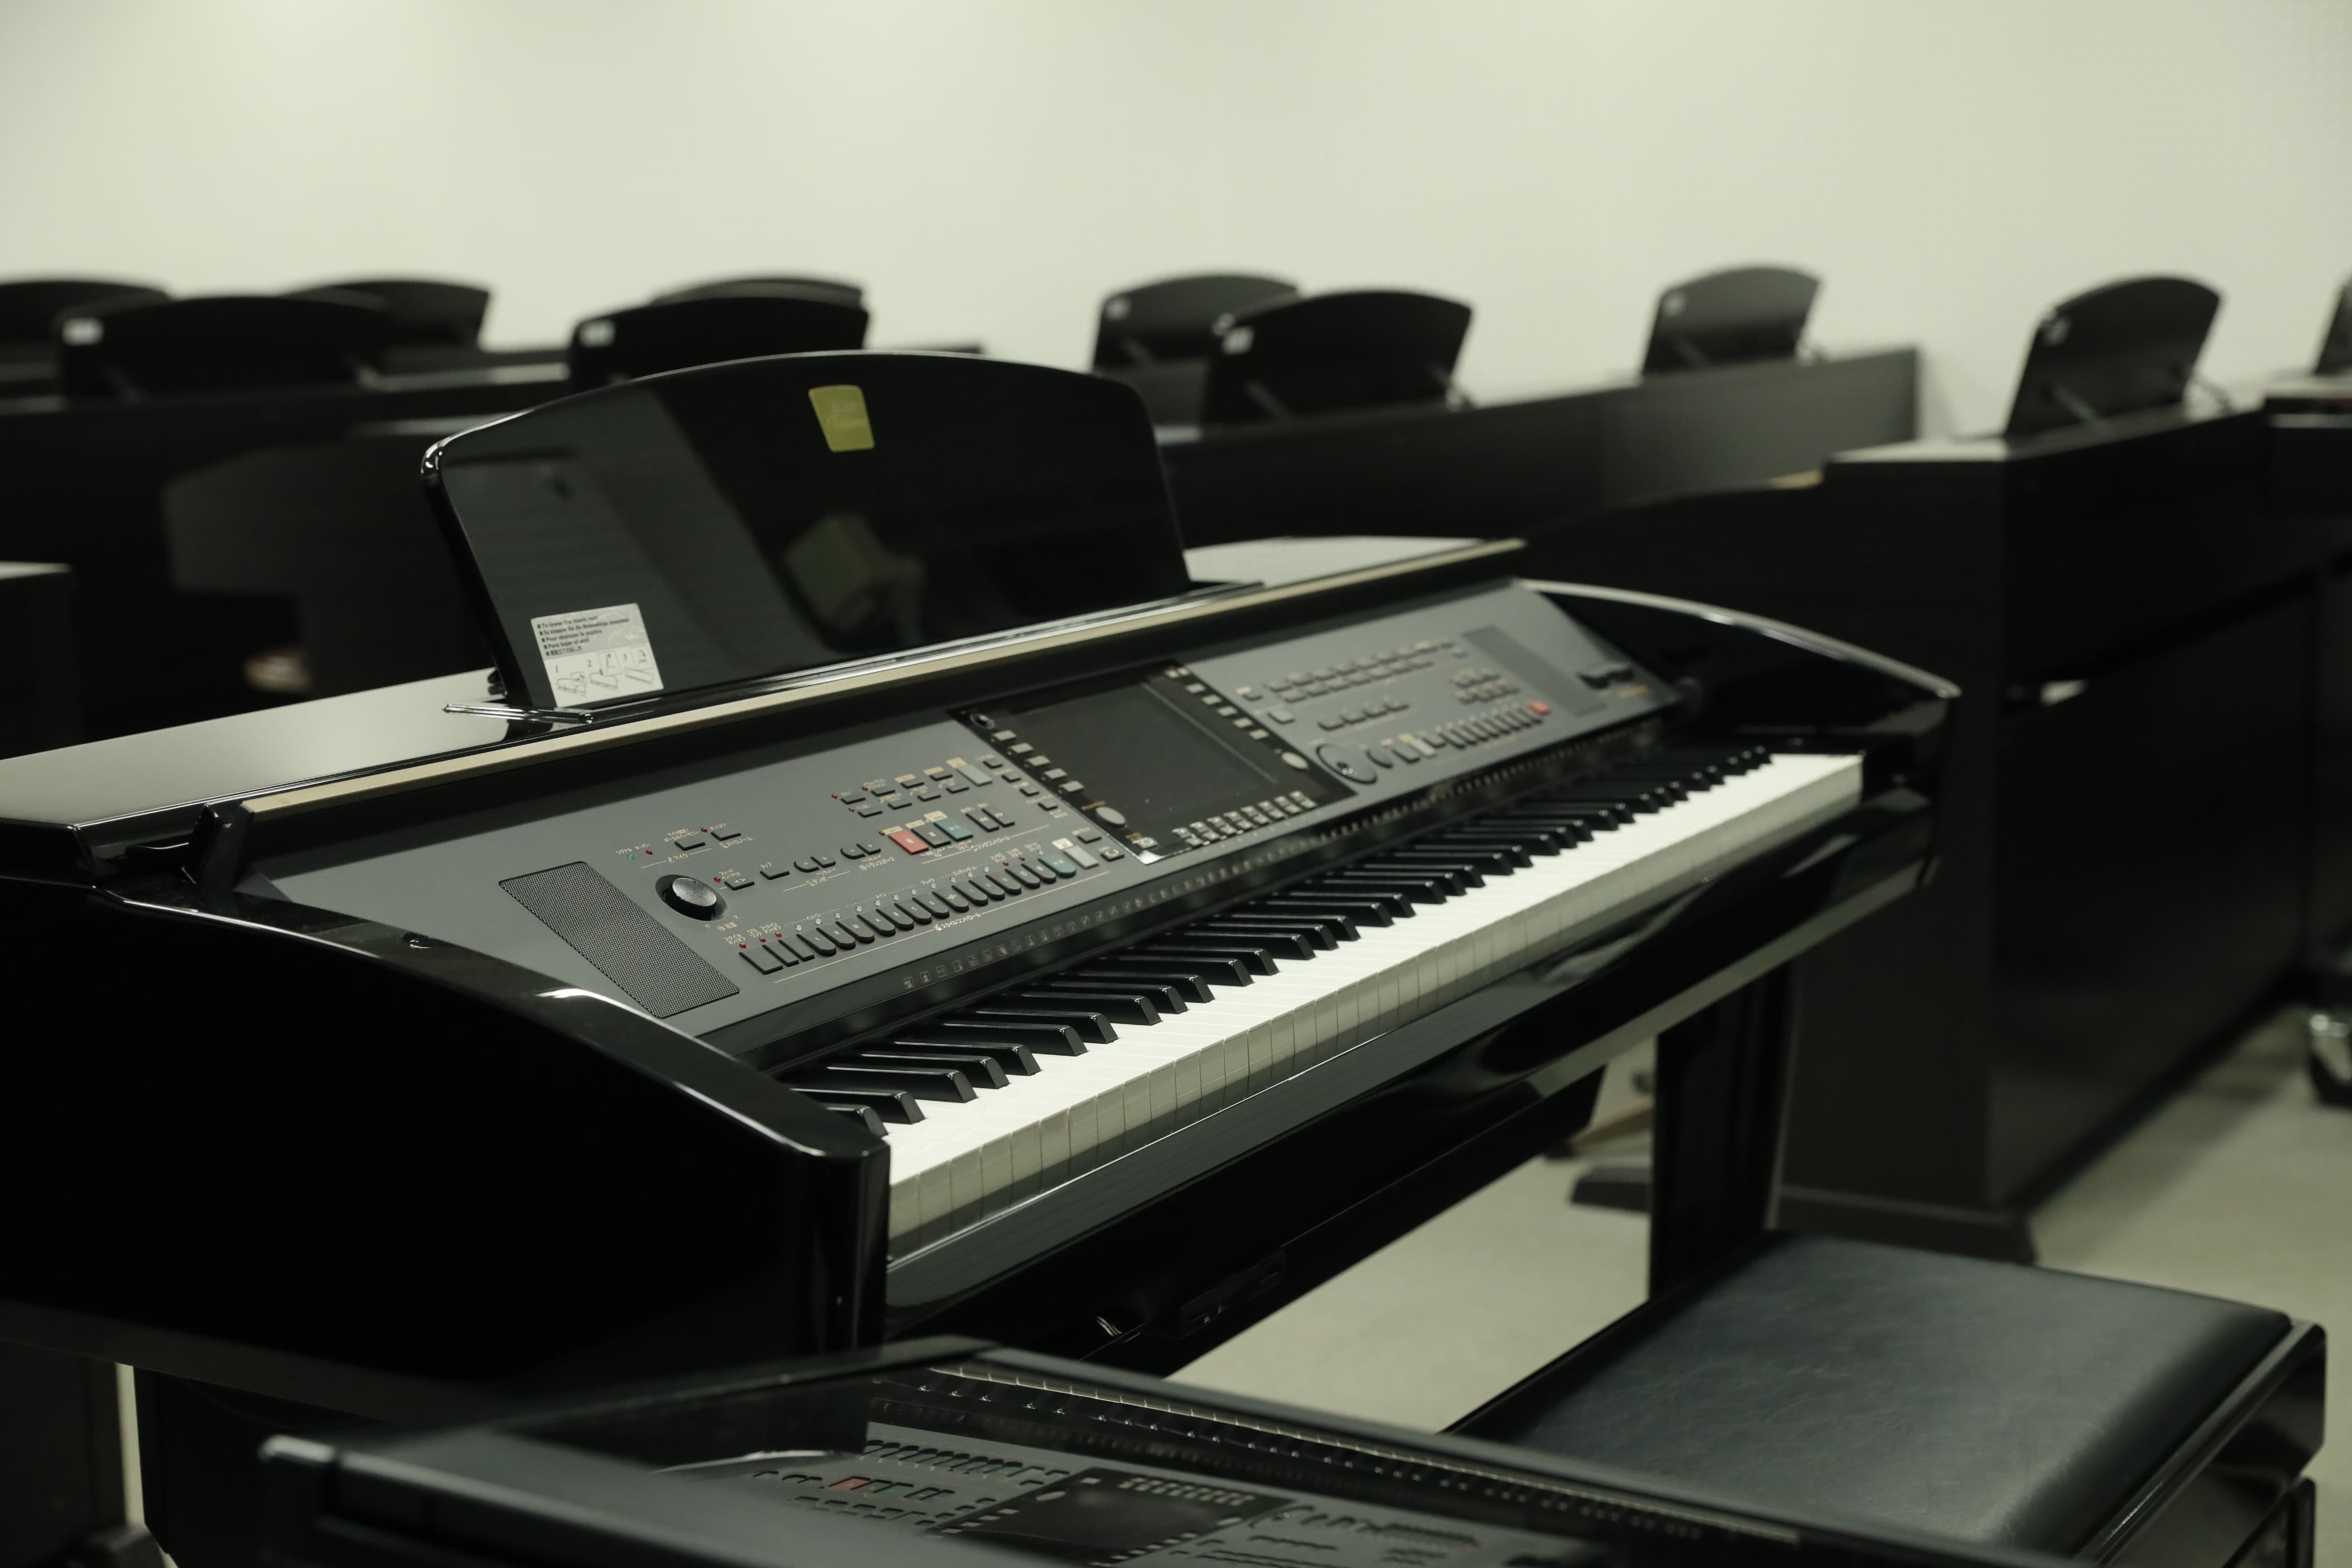 ピアノ室：教育学部の学生がおもにピアノ演奏技術を習得するために、25台の電子ピアノを整備しています。